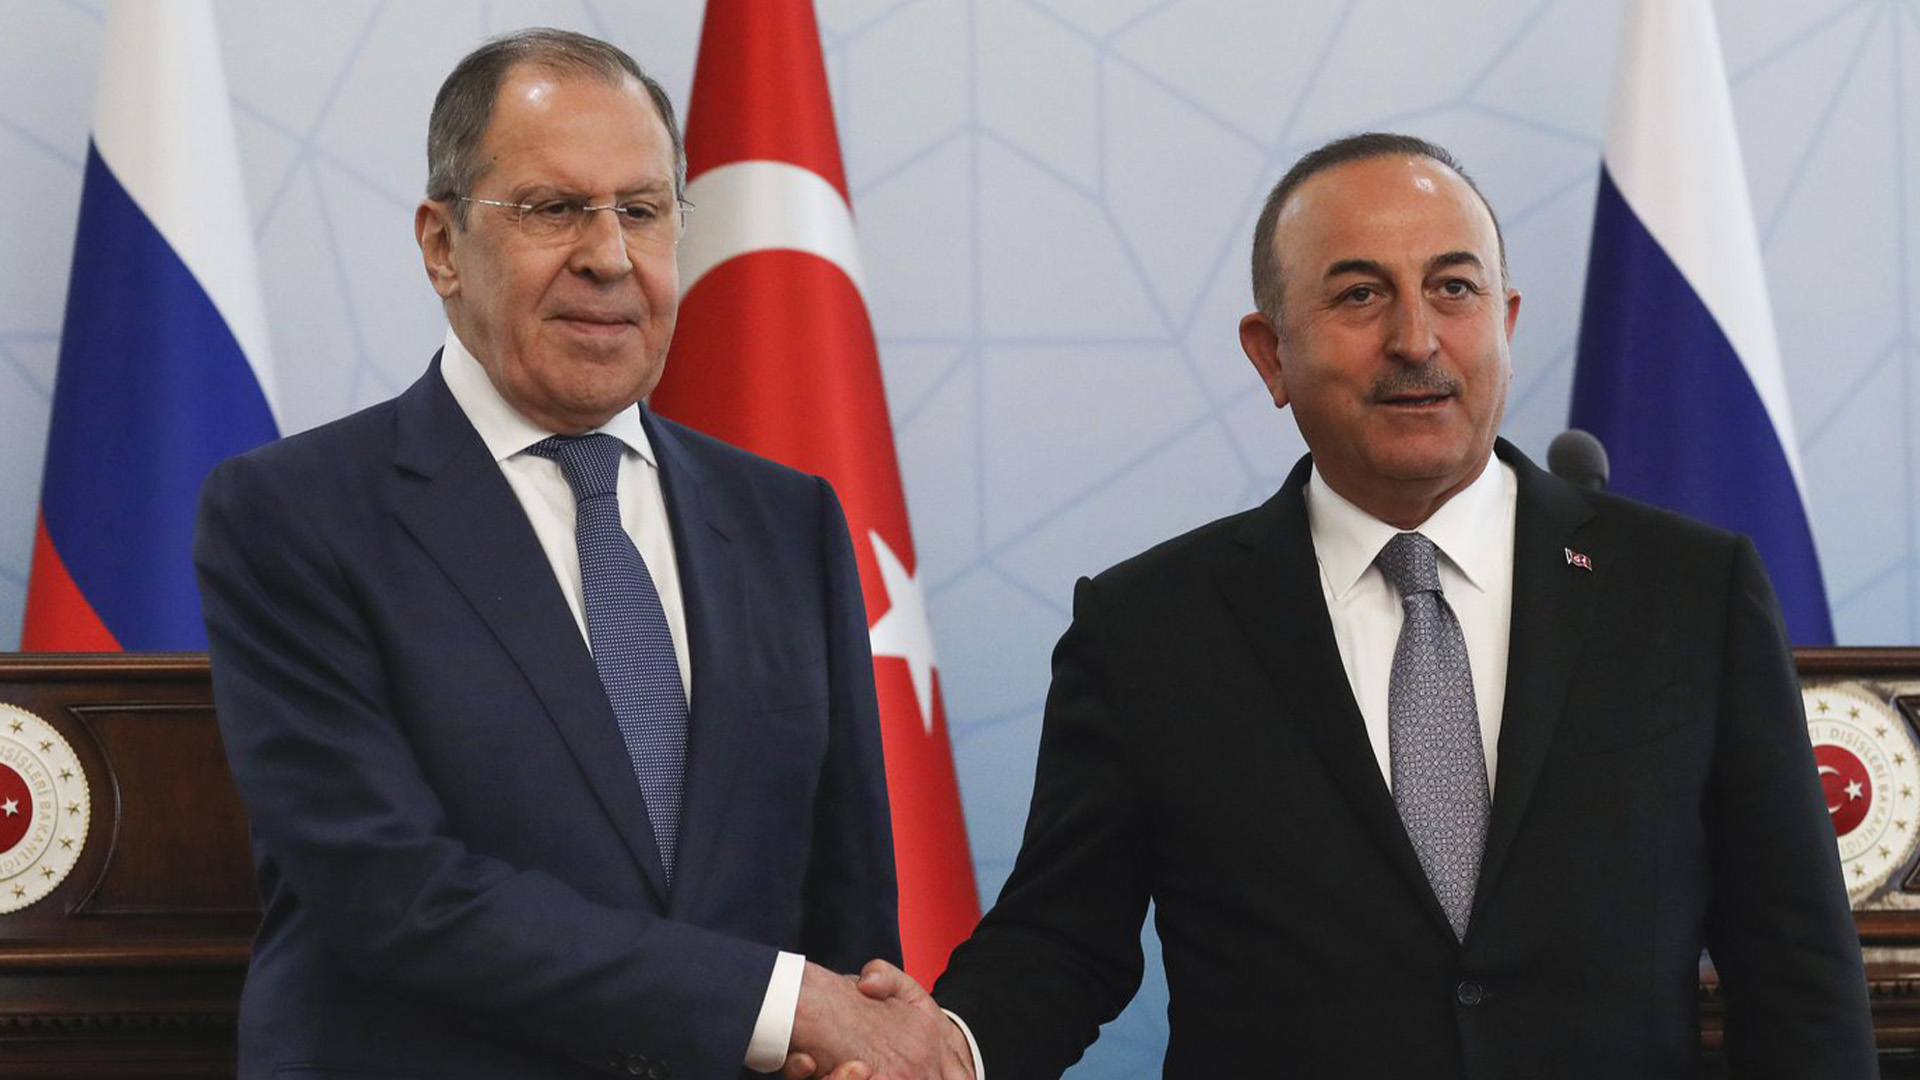 Le ministre russe des Affaires étrangères Sergeï Lavrov et son homologue turc Mevlut Cavusoglu ont discuté mercredi à Ankara. M. Cavusoglu s'est ensuite déclaré «optimiste» quant à une reprise des discussions entre Moscou et Kyiv.